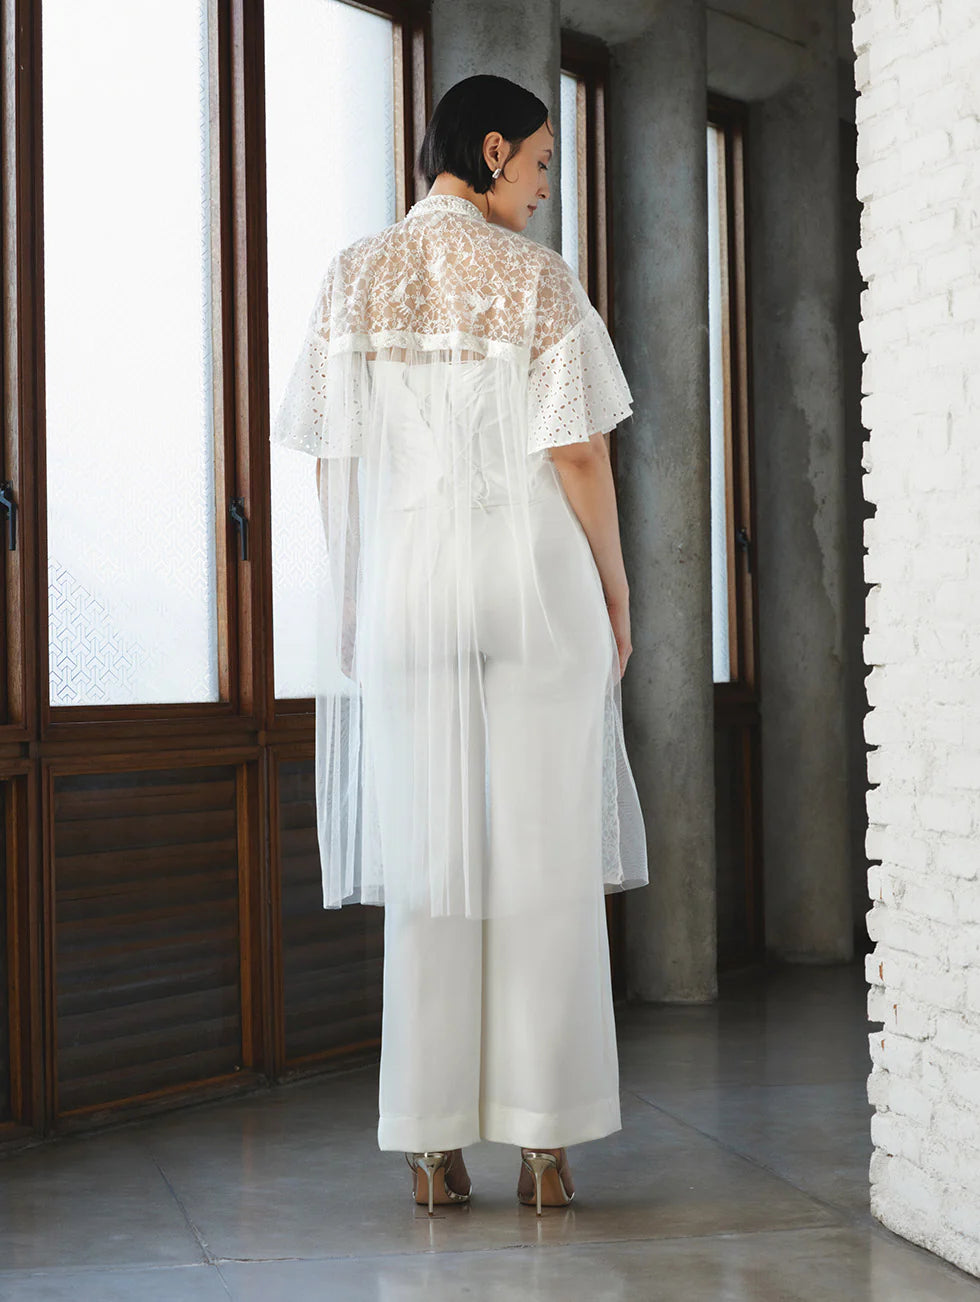 Gala Dress No 3 White - Studio Senses